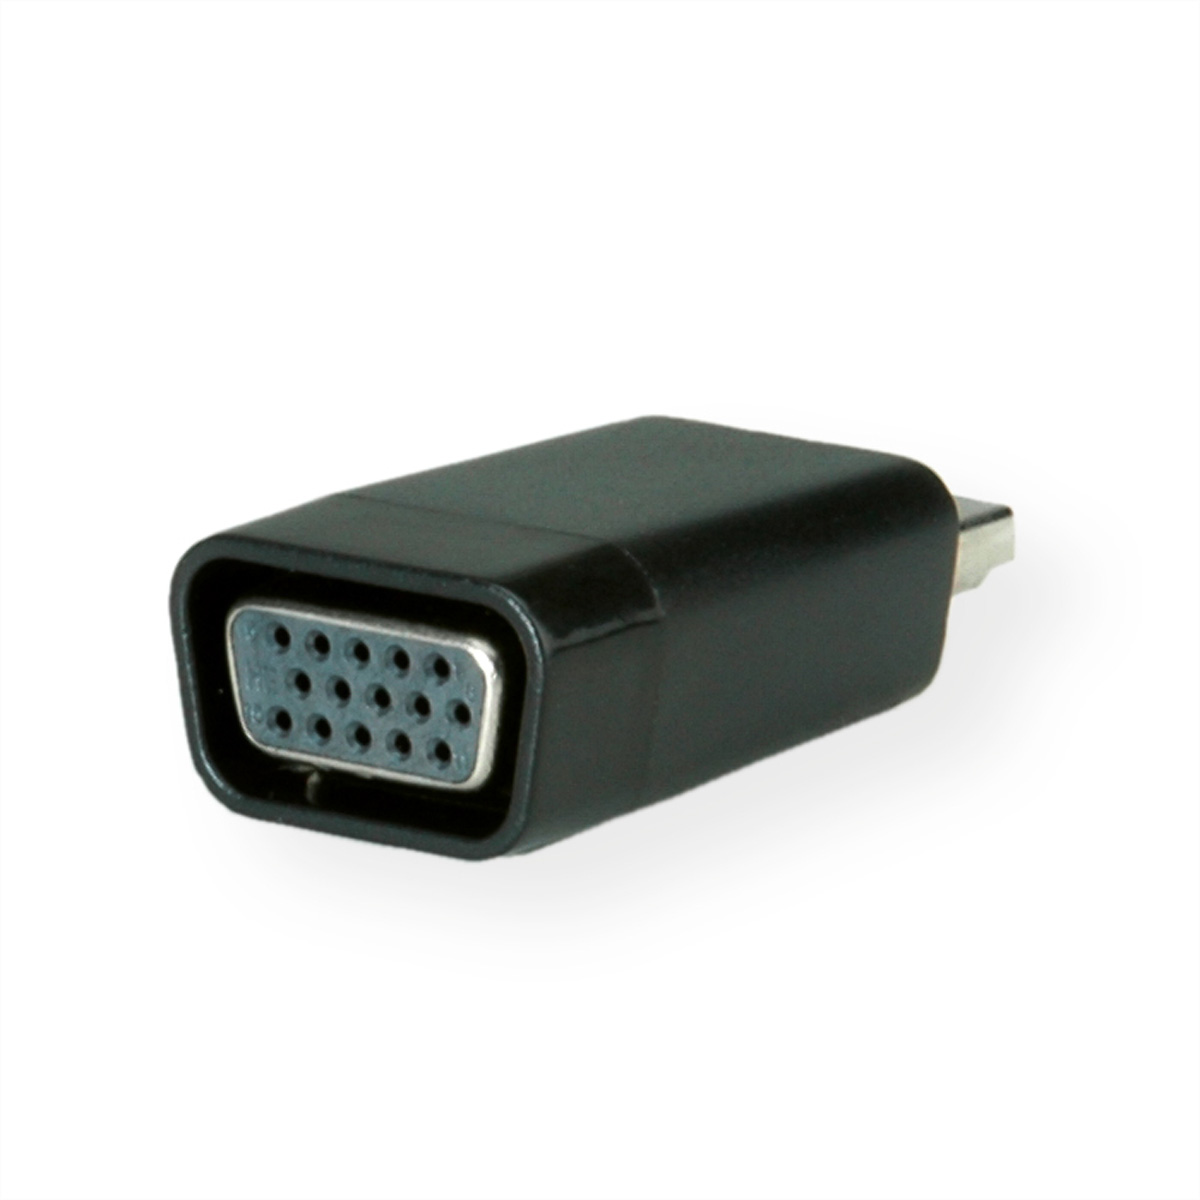 Adapter, VALUE / Adapter BU HDMI HDMI-VGA VGA HDMI-VGA ST